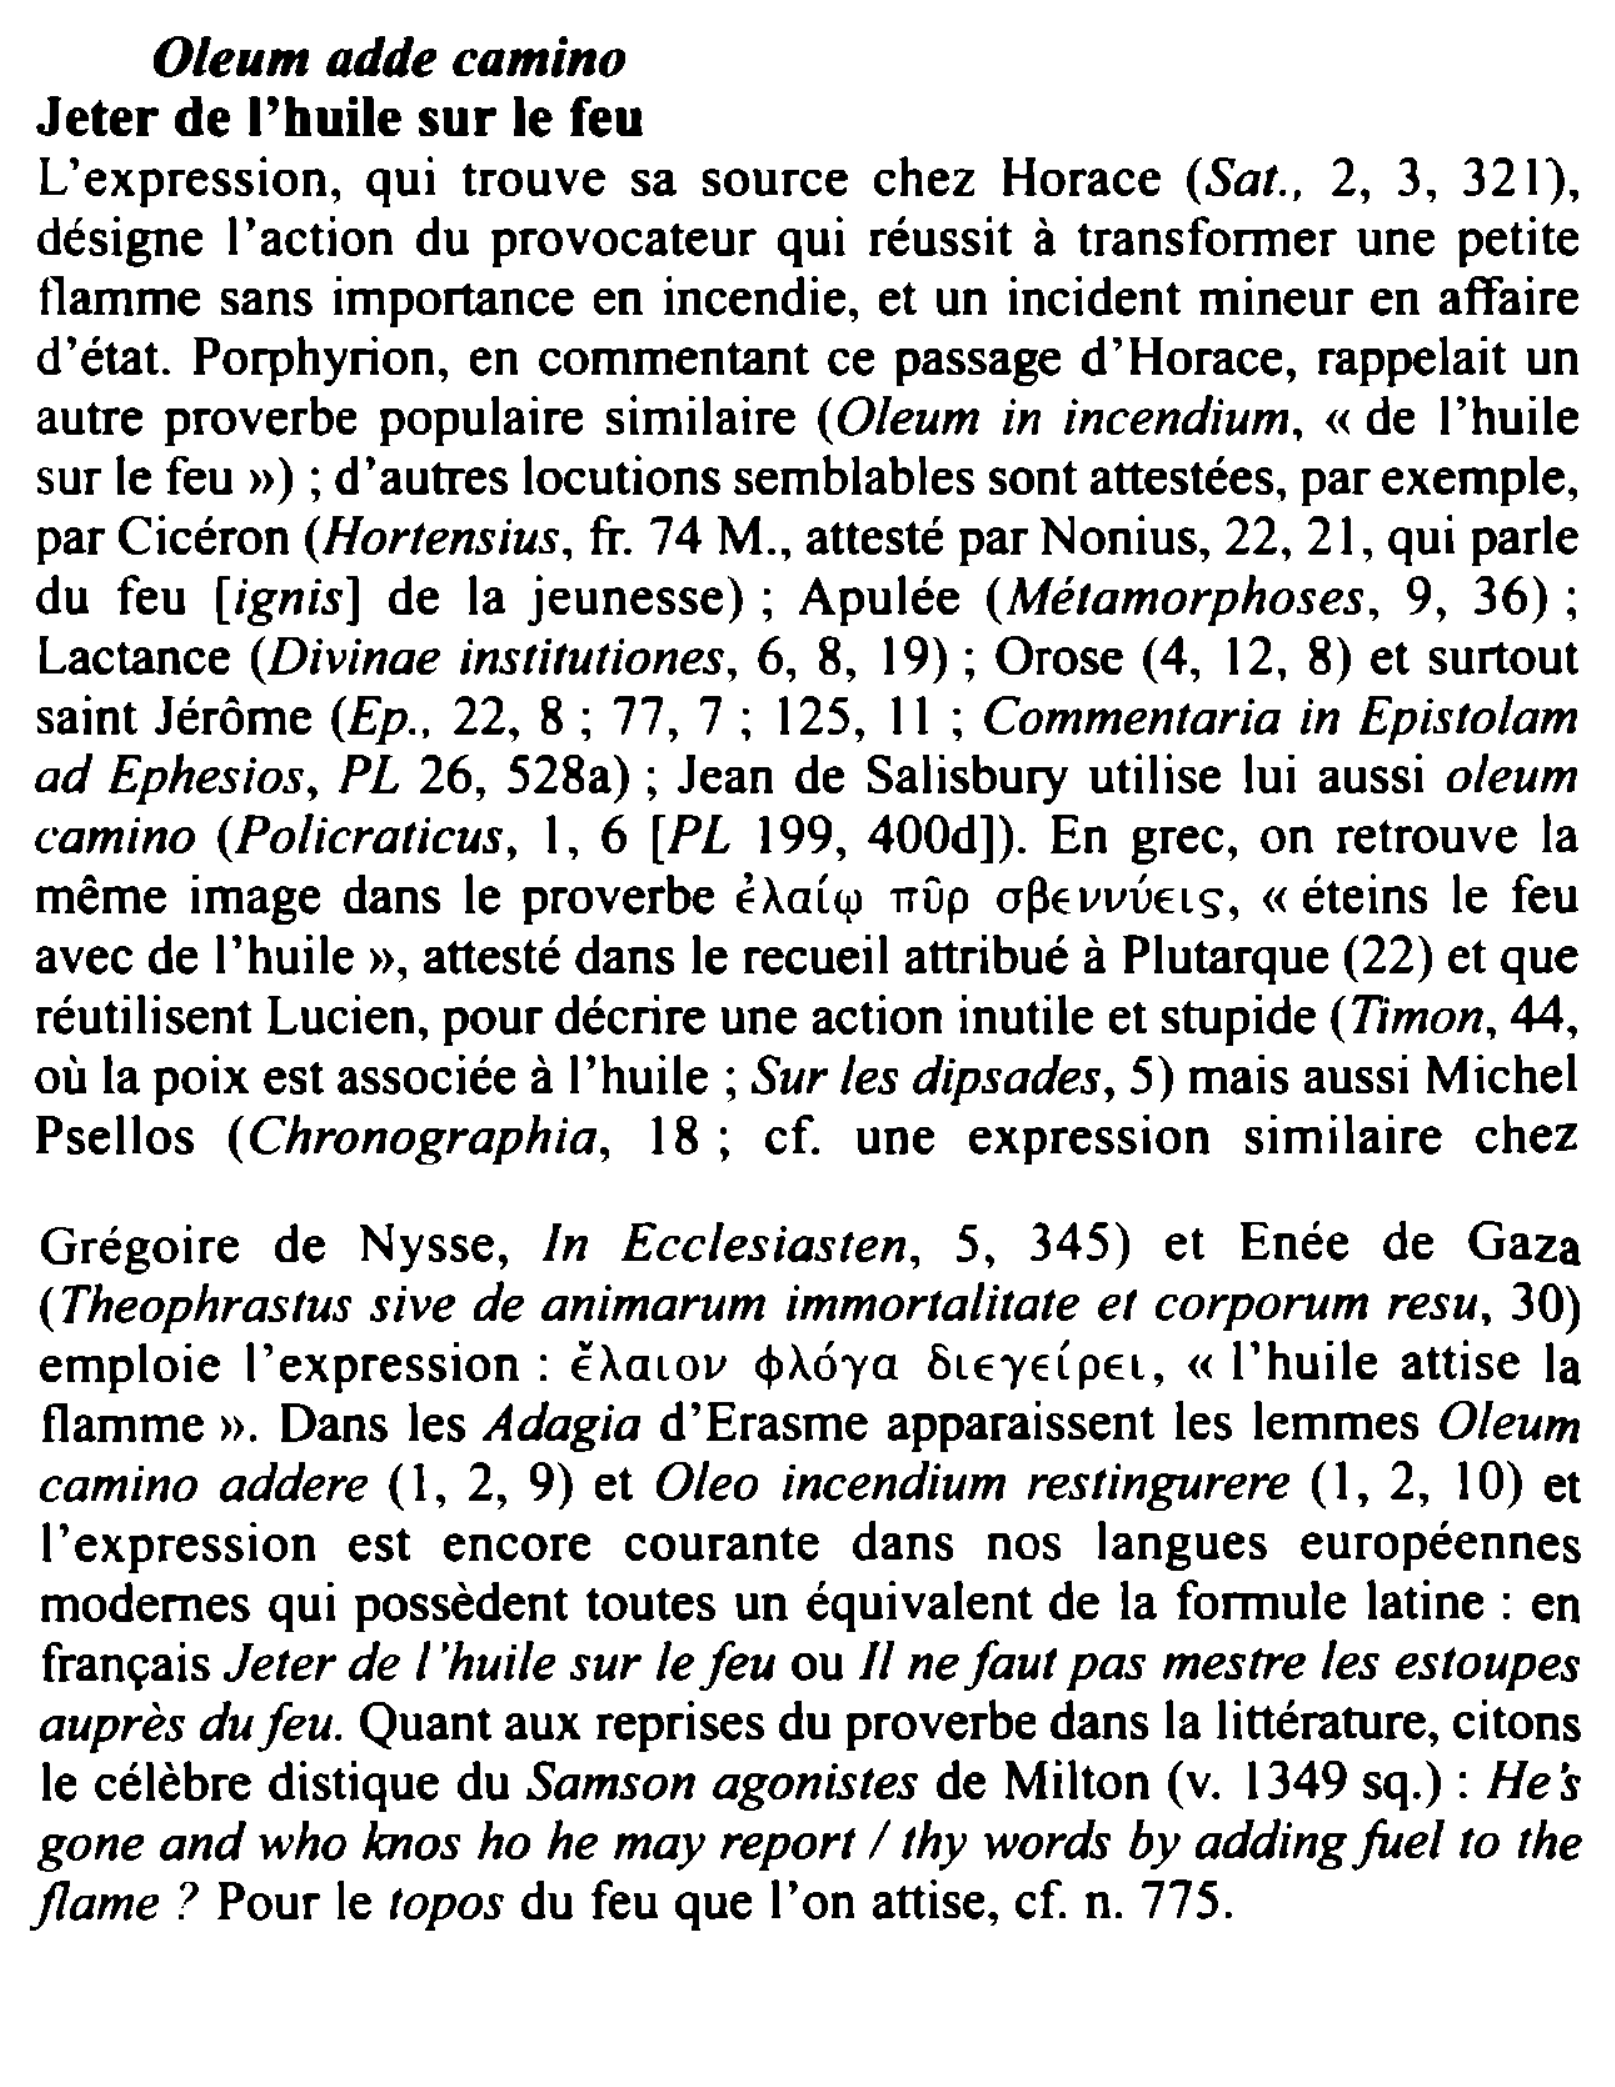 Prévisualisation du document Oleum adde camino
Jeter de l'huile sur le feu
L'expression, qui trouve sa source chez Horace (Sat., 2, 3, 321),...